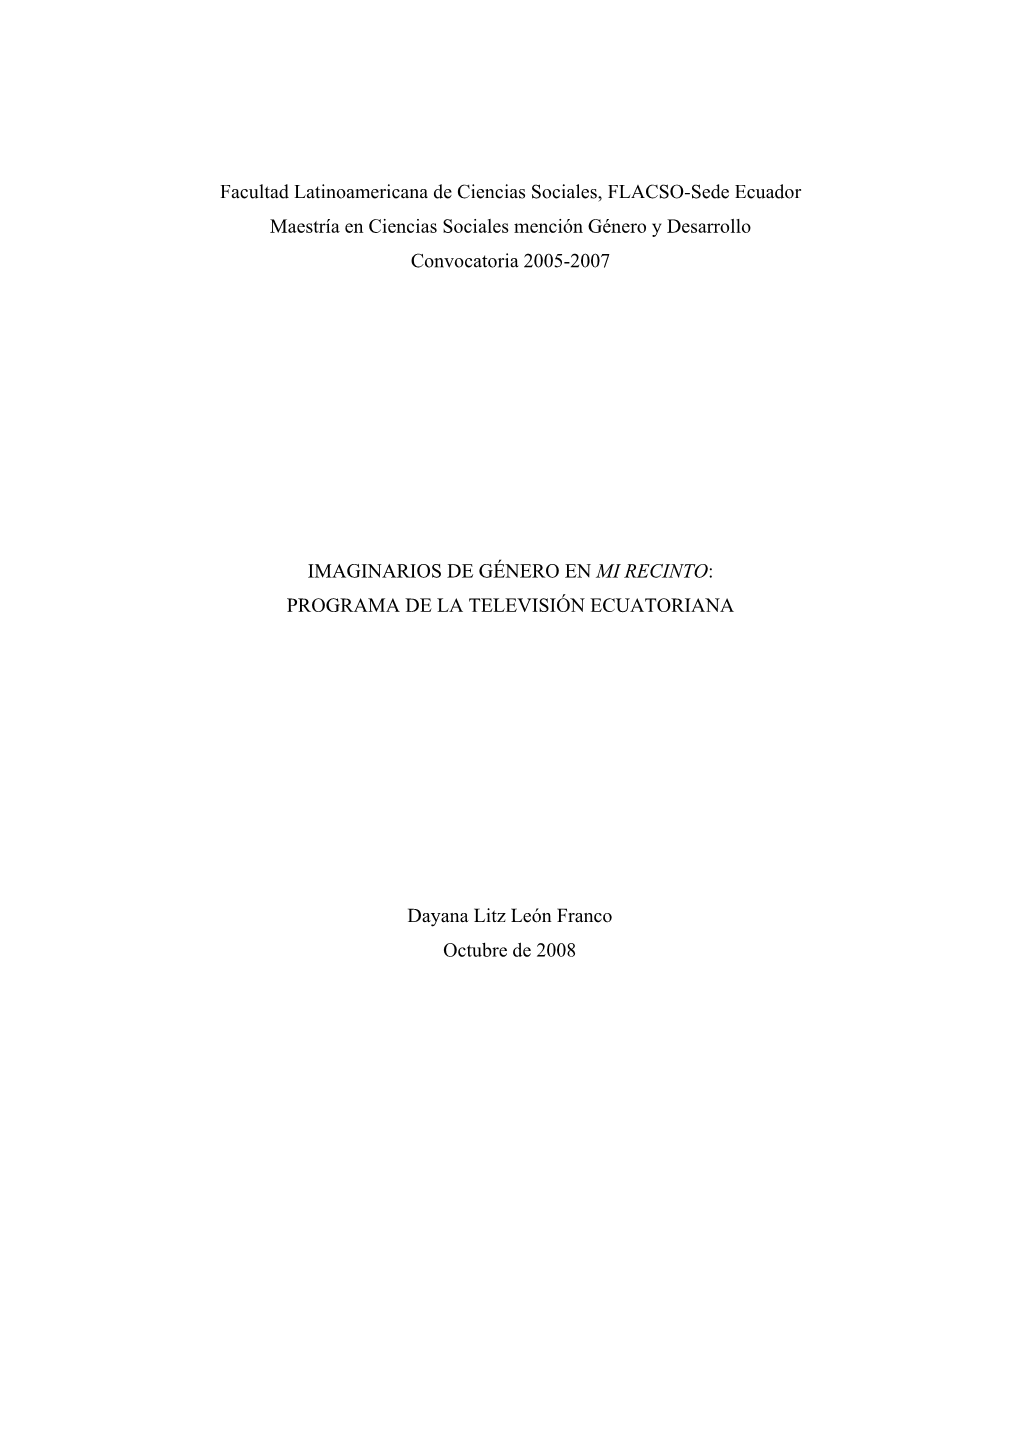 Facultad Latinoamericana De Ciencias Sociales, FLACSO-Sede Ecuador Maestría En Ciencias Sociales Mención Género Y Desarrollo Convocatoria 2005-2007